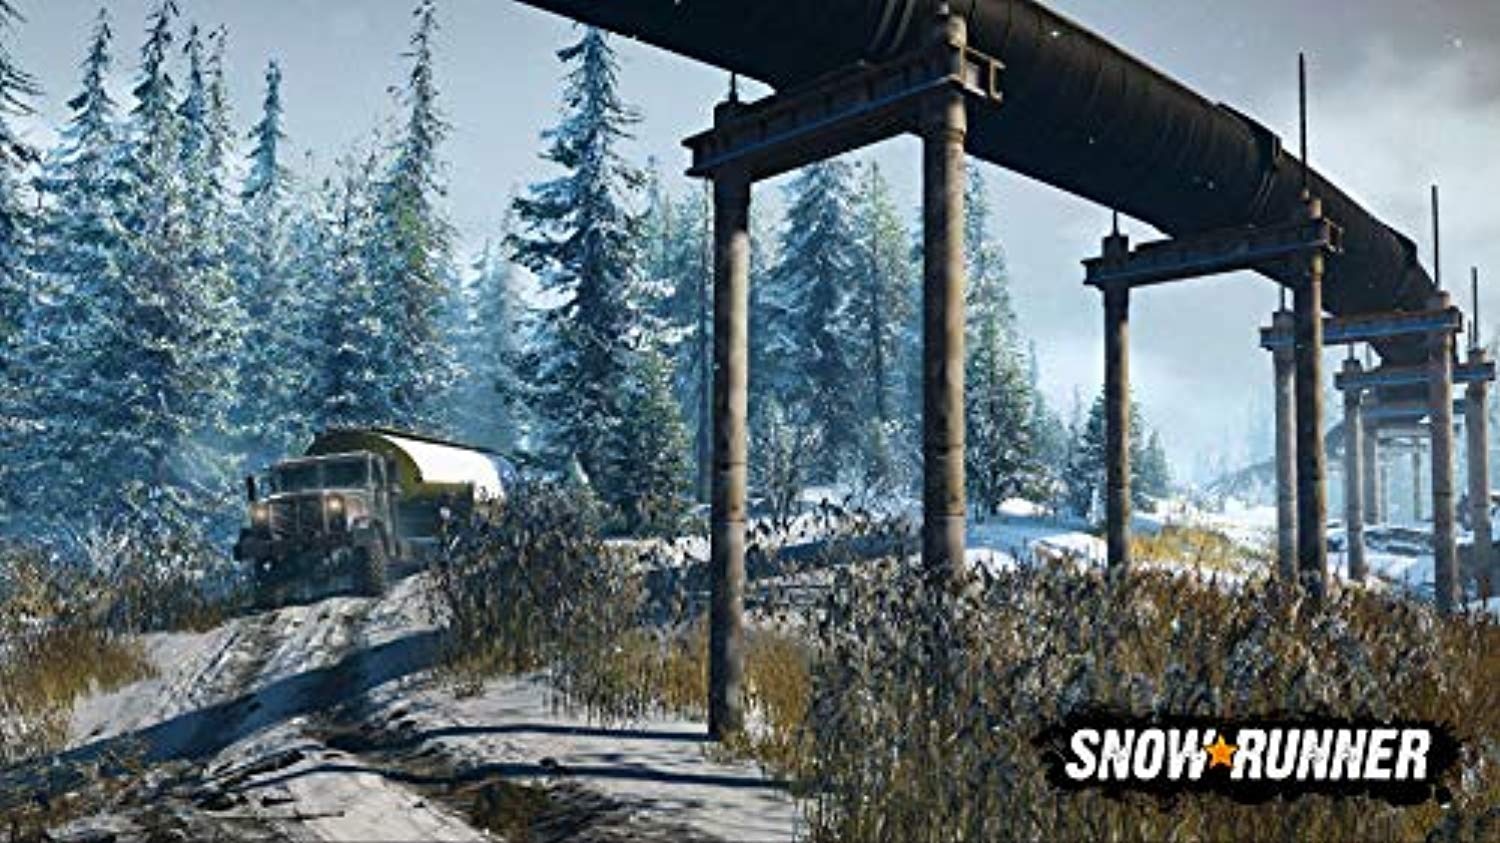 Snowrunner (PS4) - Offer Games